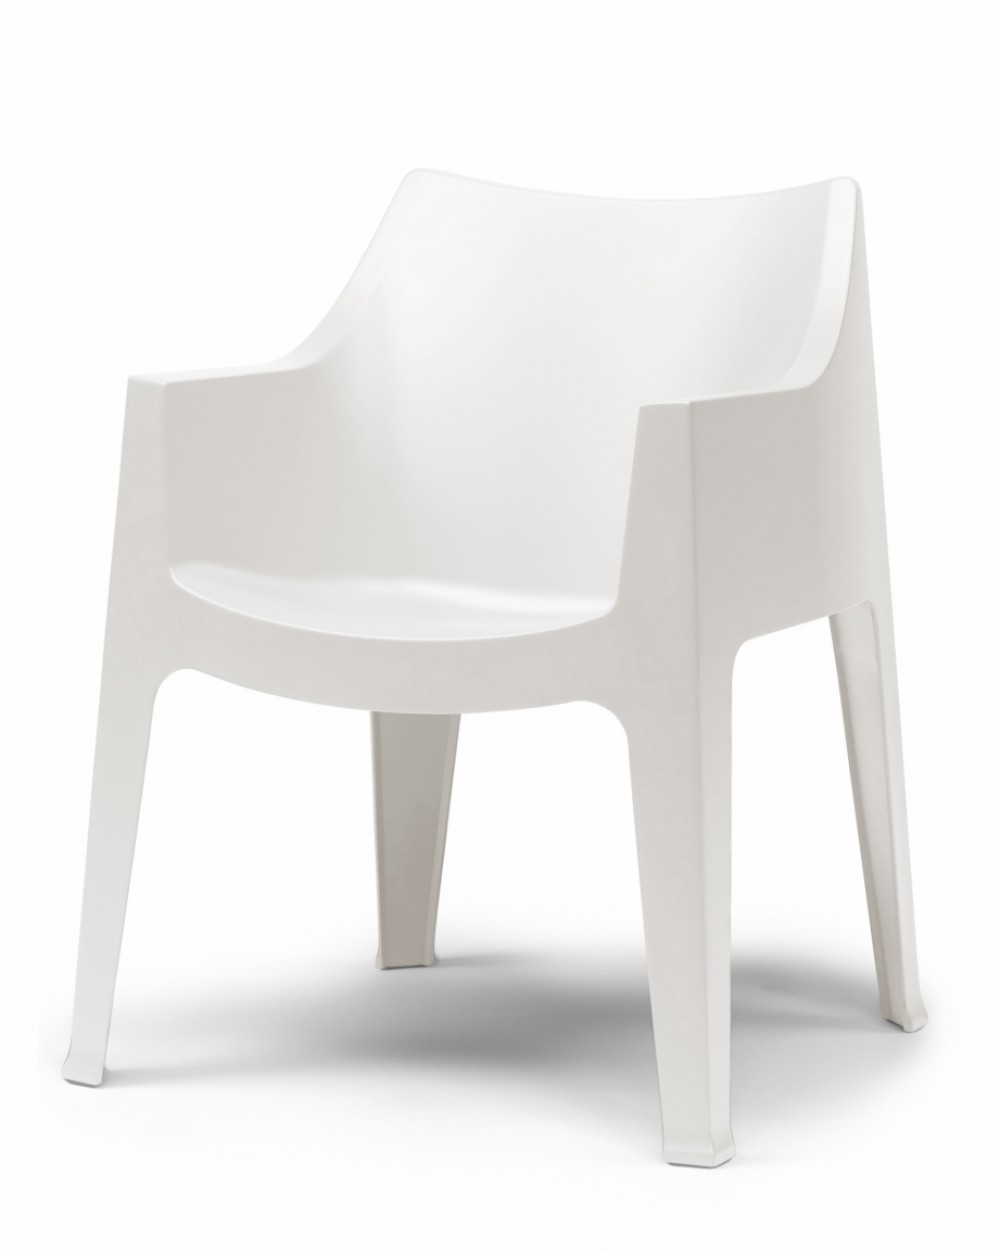 Stuhl weiß Kunststoff, Gartenstuhl weiß stapelbar, Outdoor Möbel